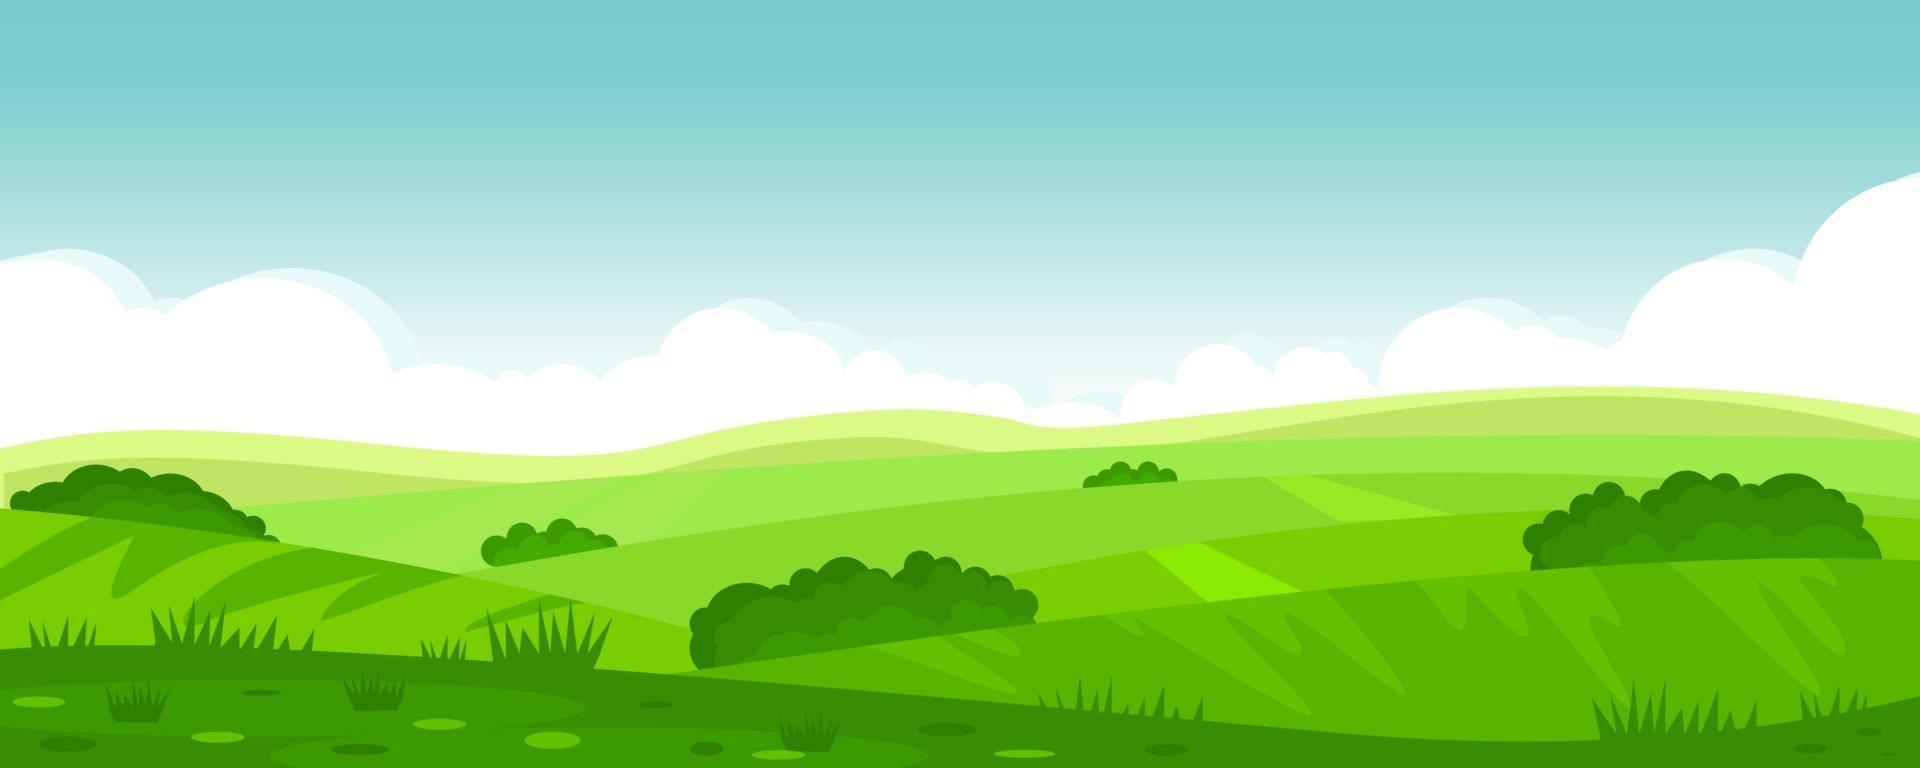 ilustración vectorial del hermoso paisaje de campos de verano, colinas  verdes, cielo azul de color brillante, país. fondo en estilo de dibujos  animados plana, banner. 2290836 Vector en Vecteezy